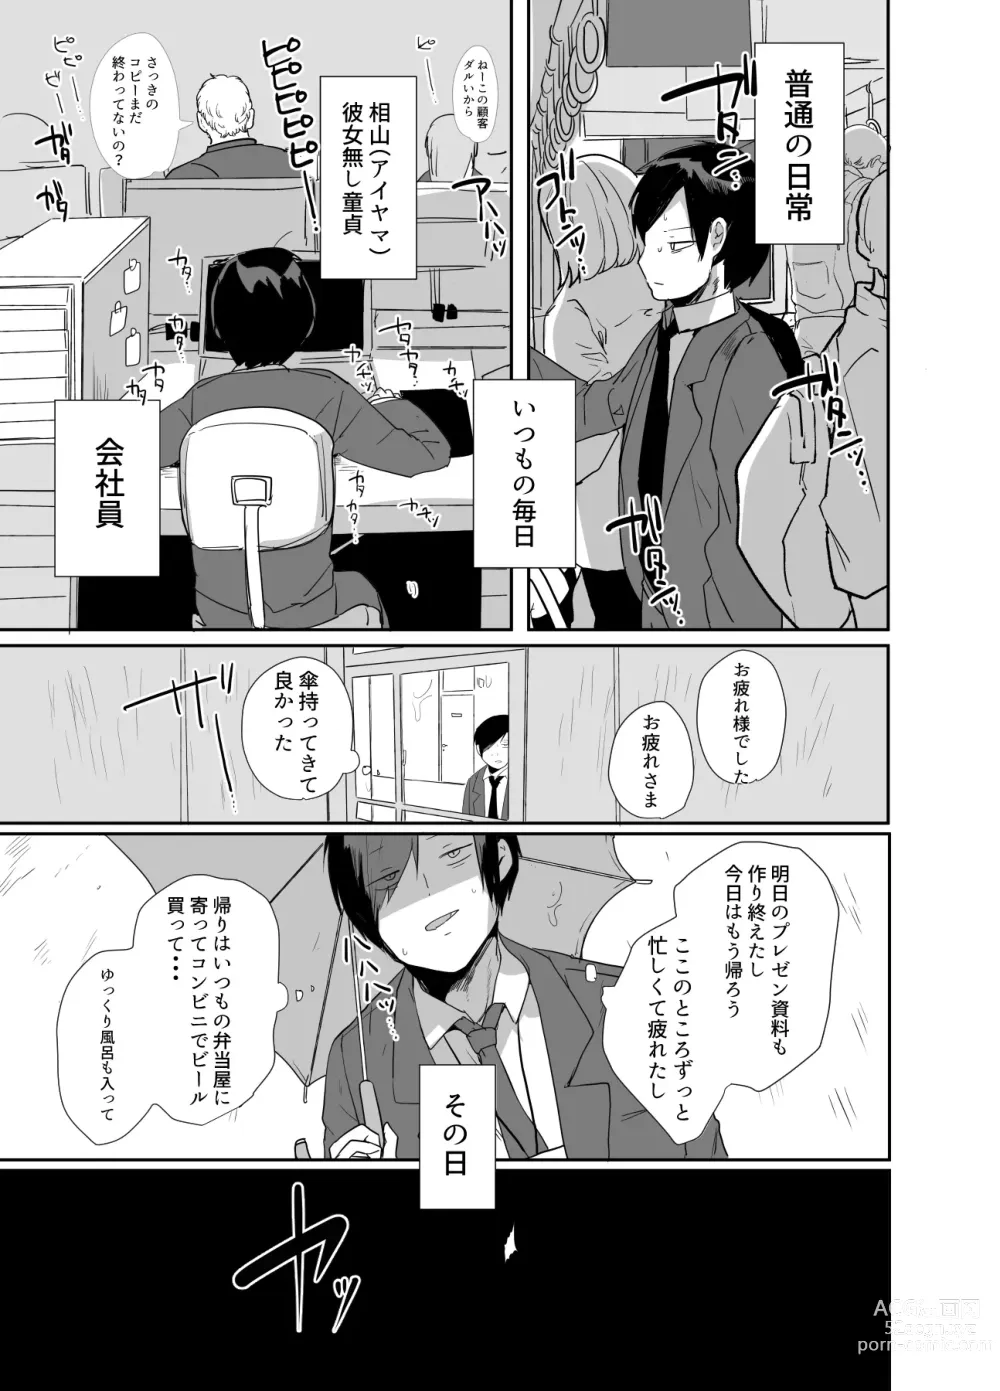 Page 5 of doujinshi Oji-san, Joshikousei no Tsukaima ni Naru